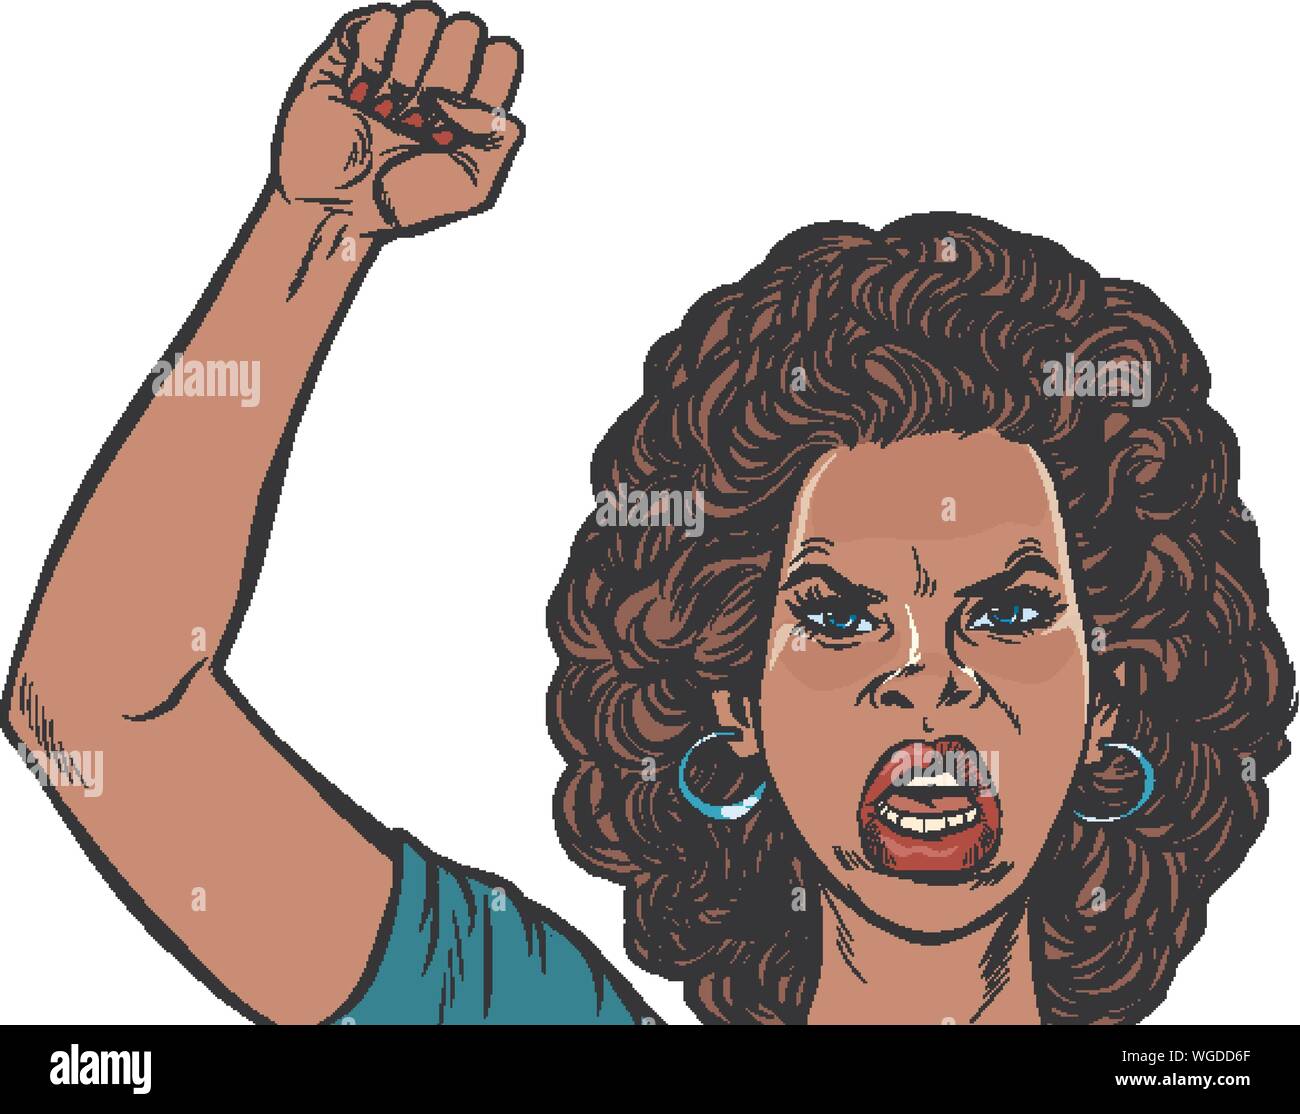 Wütend Demonstrant afrikanische Frau, Rallye widerstand Freiheit Demokratie. Pop Art retro Vektor illustration Zeichnung Stock Vektor